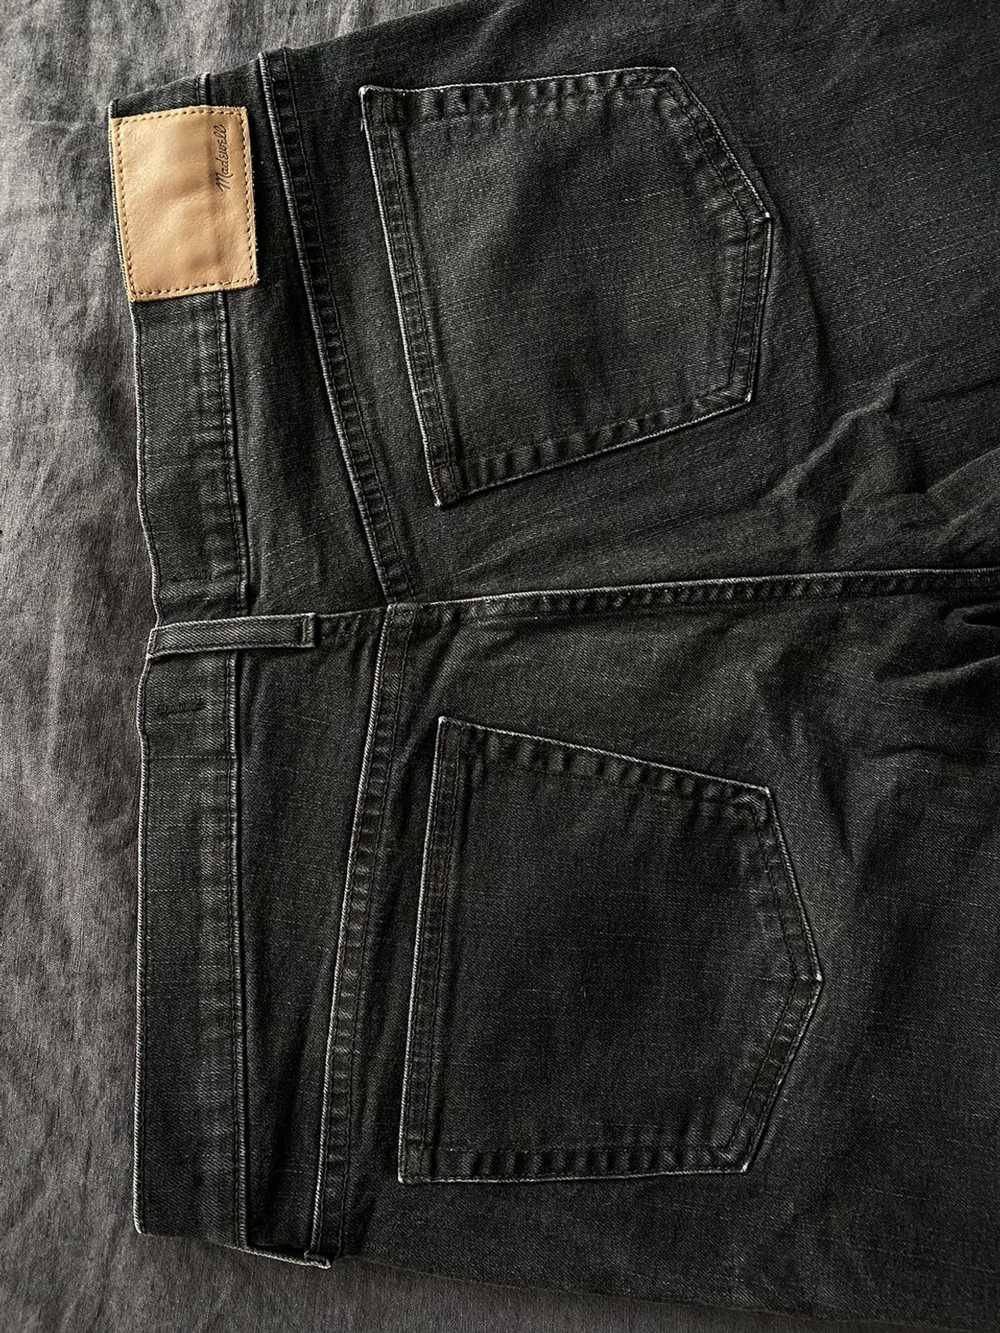 Madewell Black Slim Jeans - 35x32 - image 6